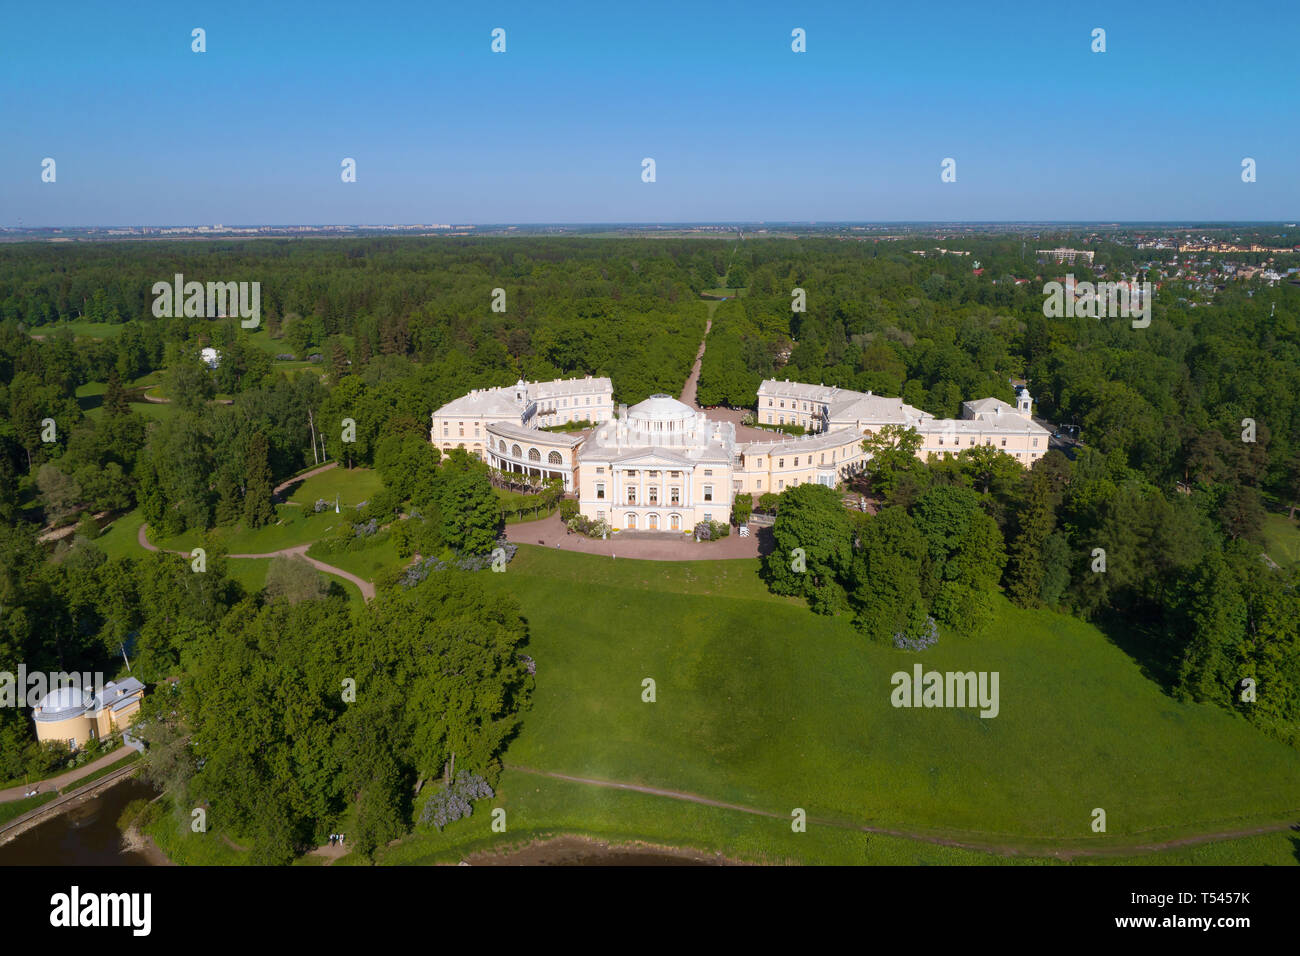 El palacio Pavlovsk, en un paisaje de verano (fotografía aérea). Los alrededores de San Petersburgo, Rusia Foto de stock